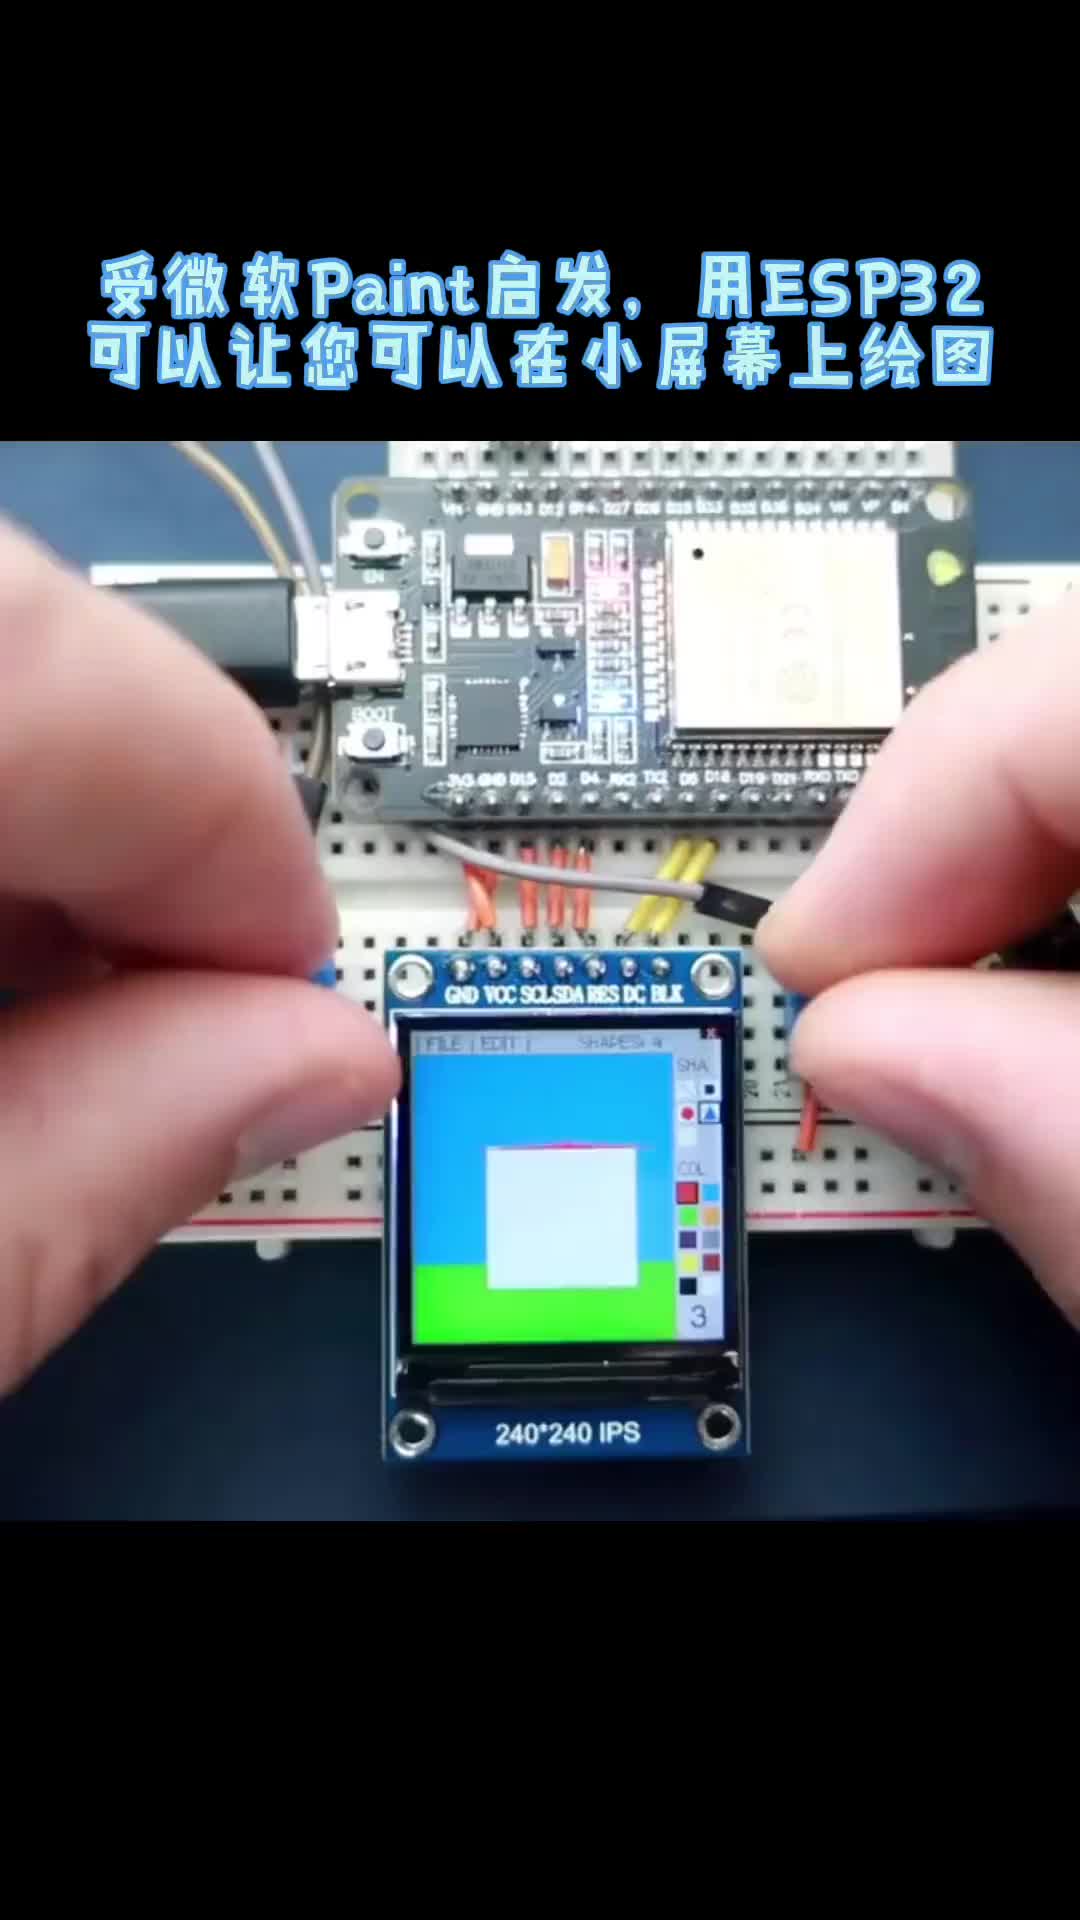 ESP32开发板，1.3寸彩色TFT显示屏，两个电位计，两个按钮，构建一个简单的绘图工具 #esp32 